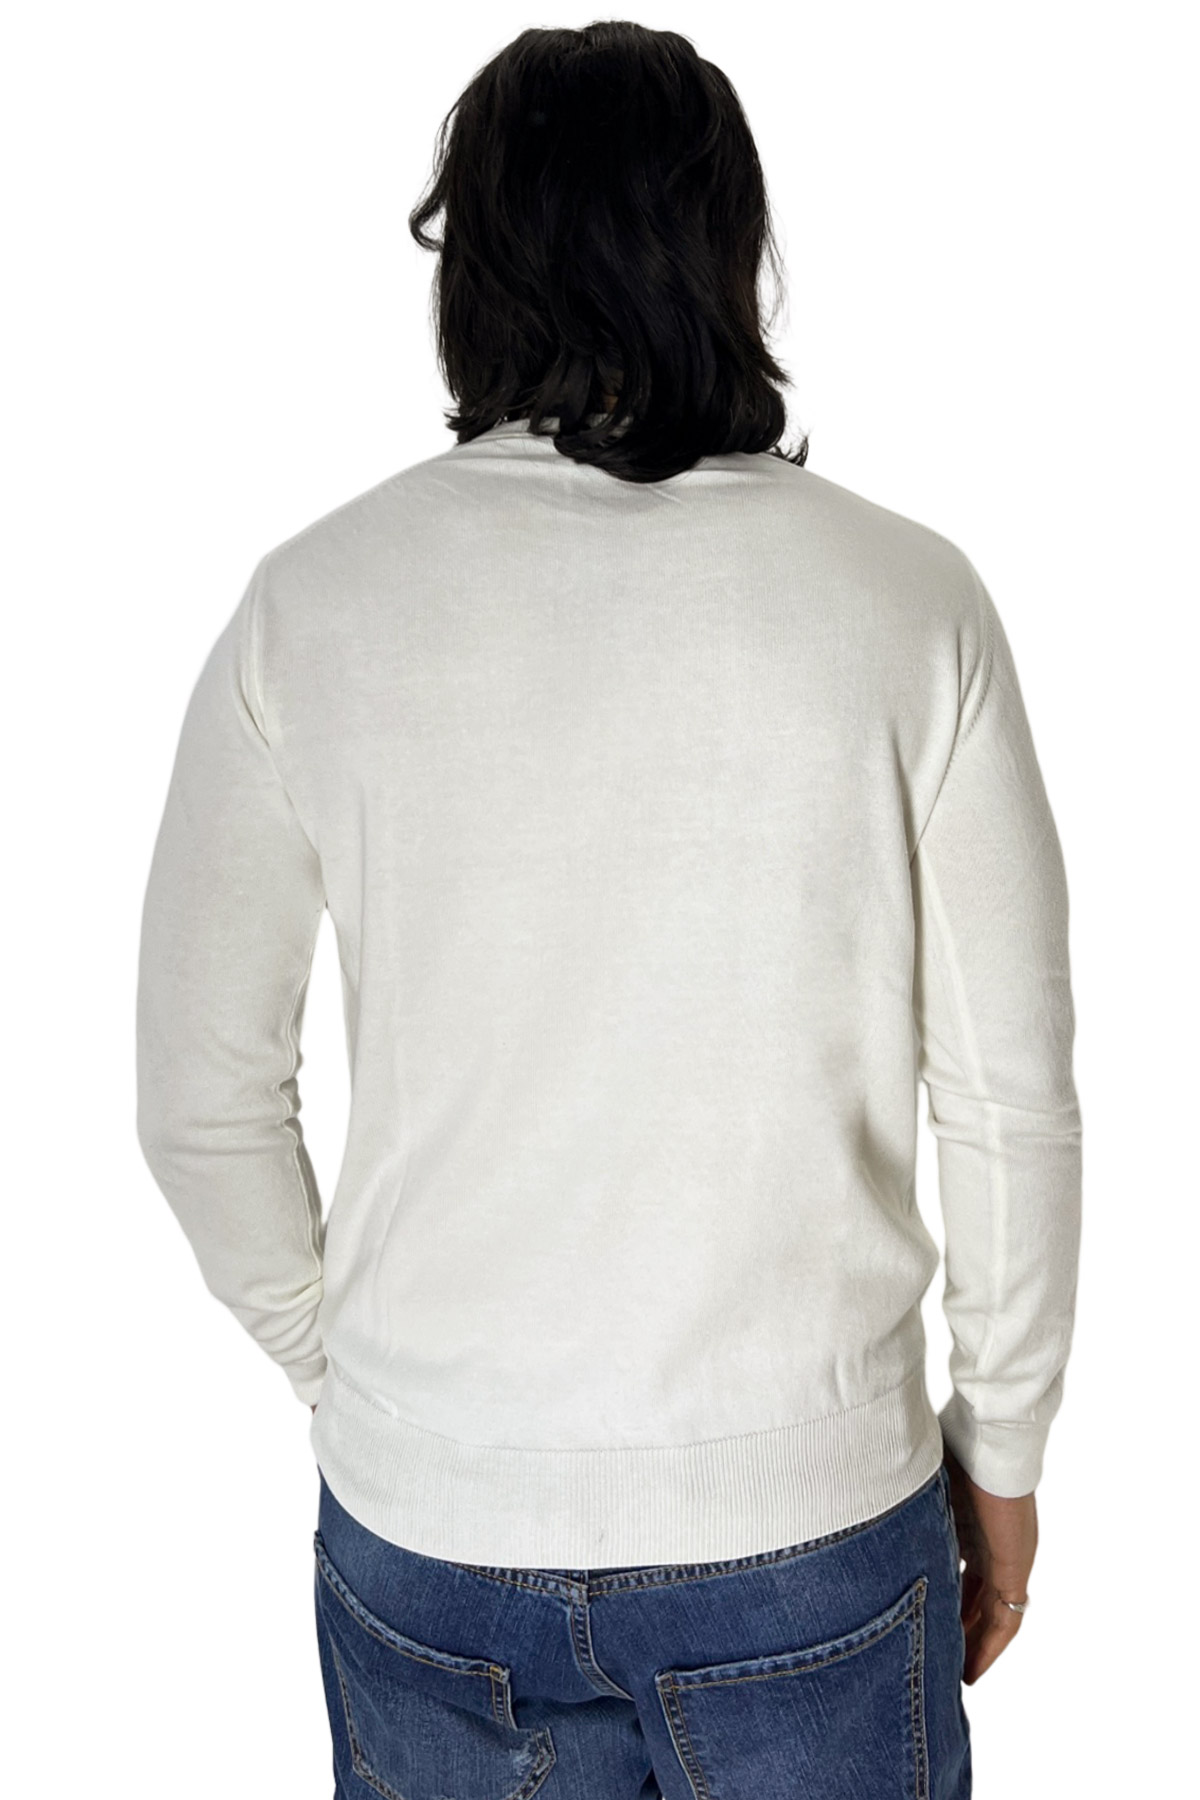 Maglioncino da uomo Bianco maniche lunghe 100% cotone di filo tinta unita